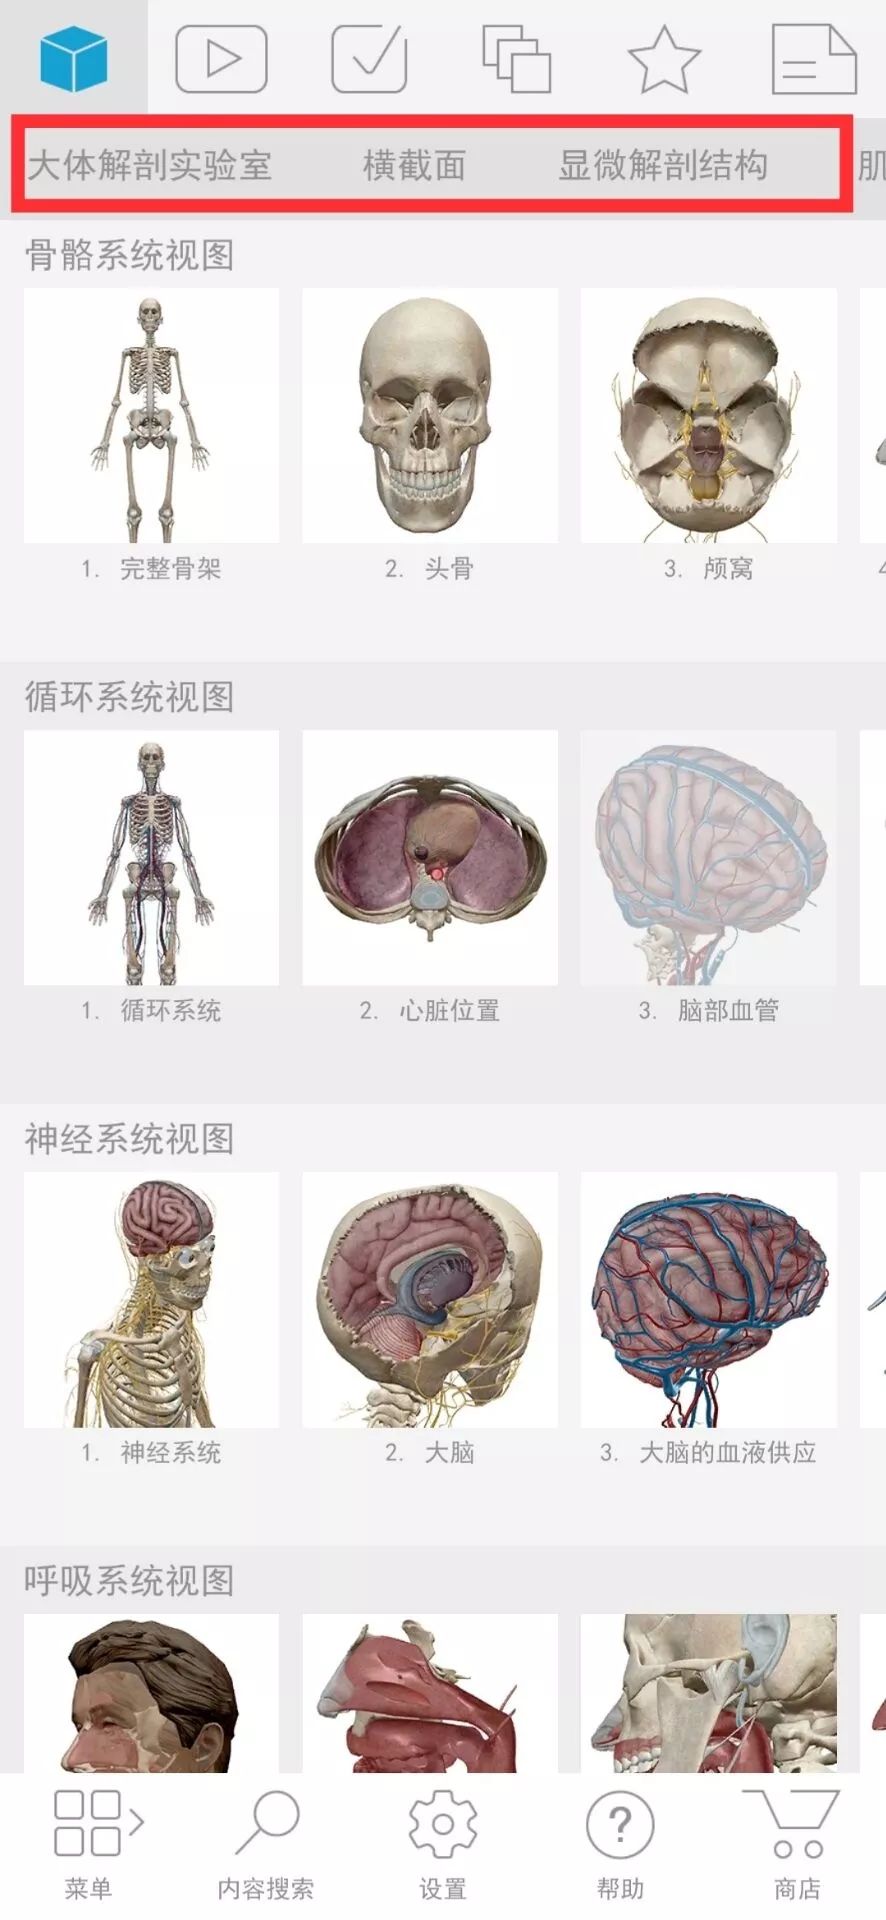 今天给大家分享一款人体解剖学图APP，内容极其重口，慎点！(图2)